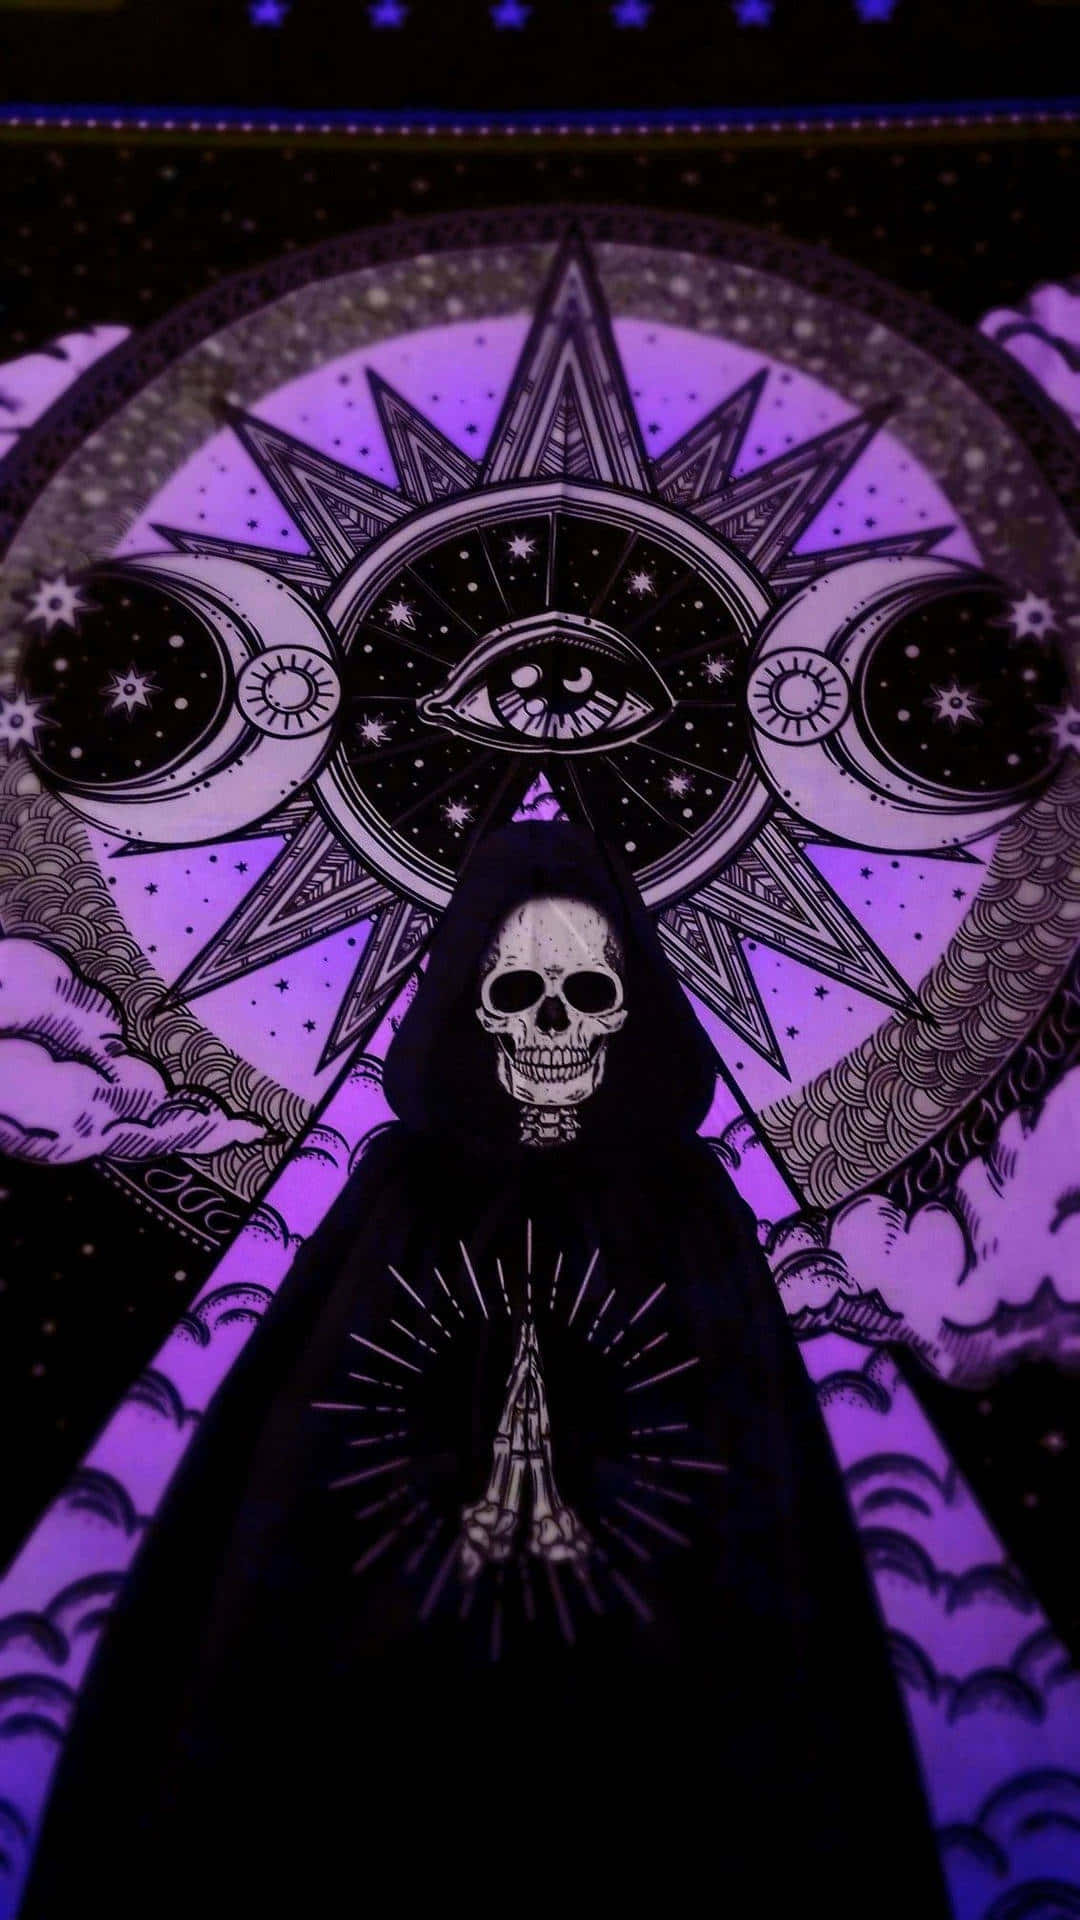 Dark_ Gothic_ Mysticism_ Artwork.jpg Wallpaper